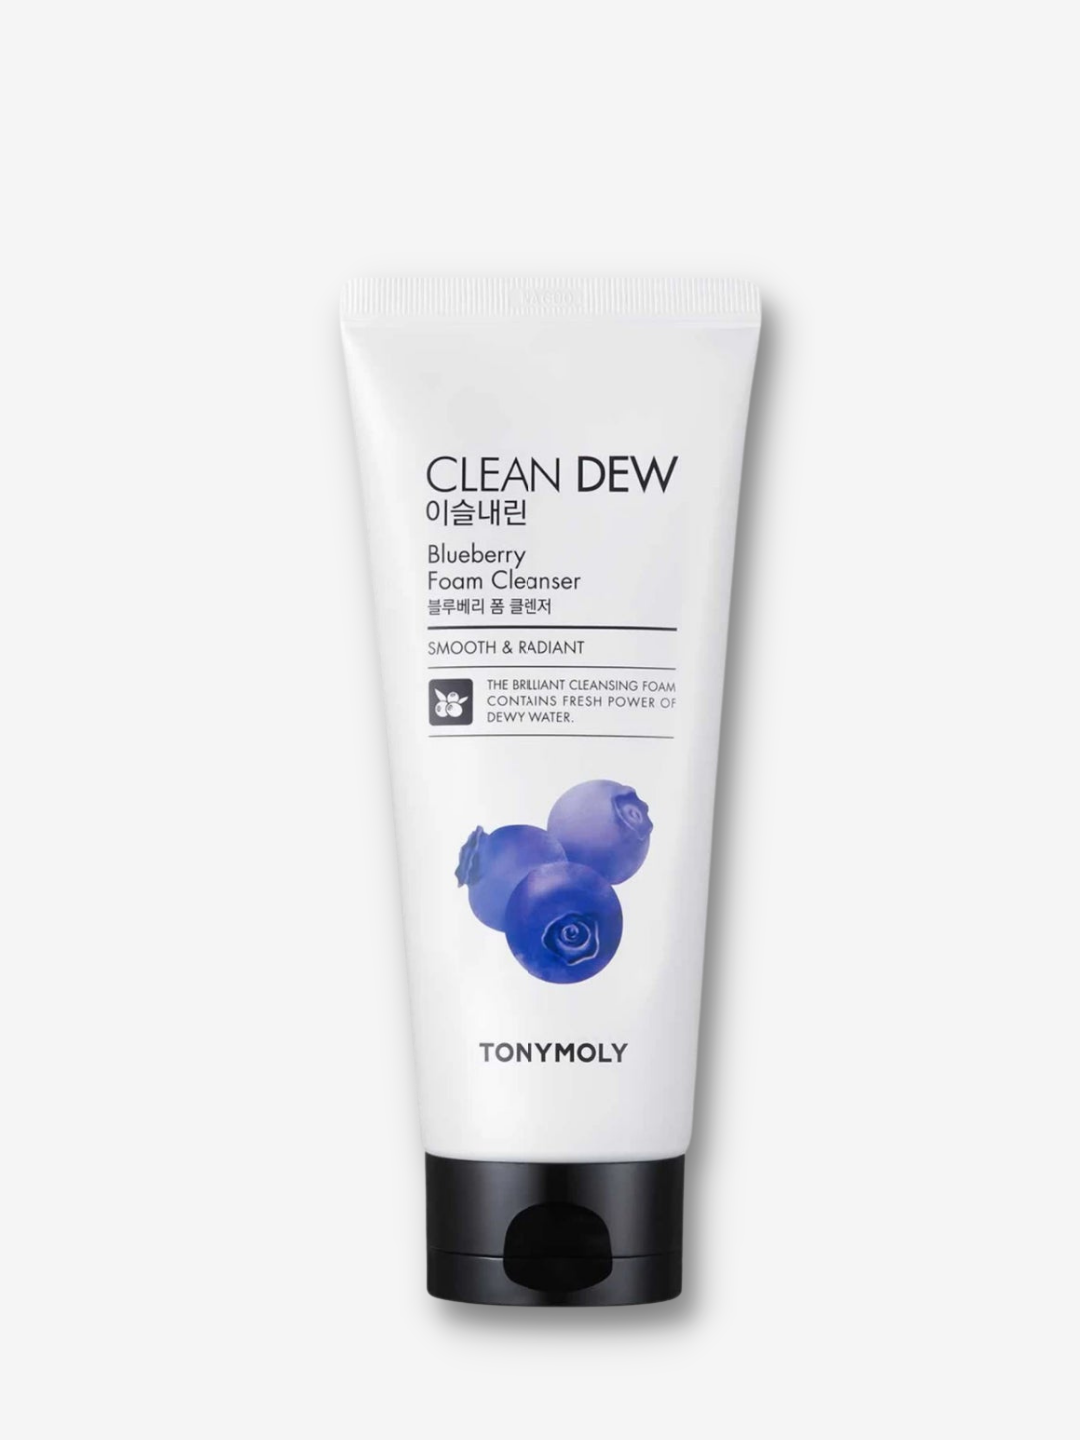 Tonymoly - Clean Dew Blueberry Foam Cleanser - 180 ml